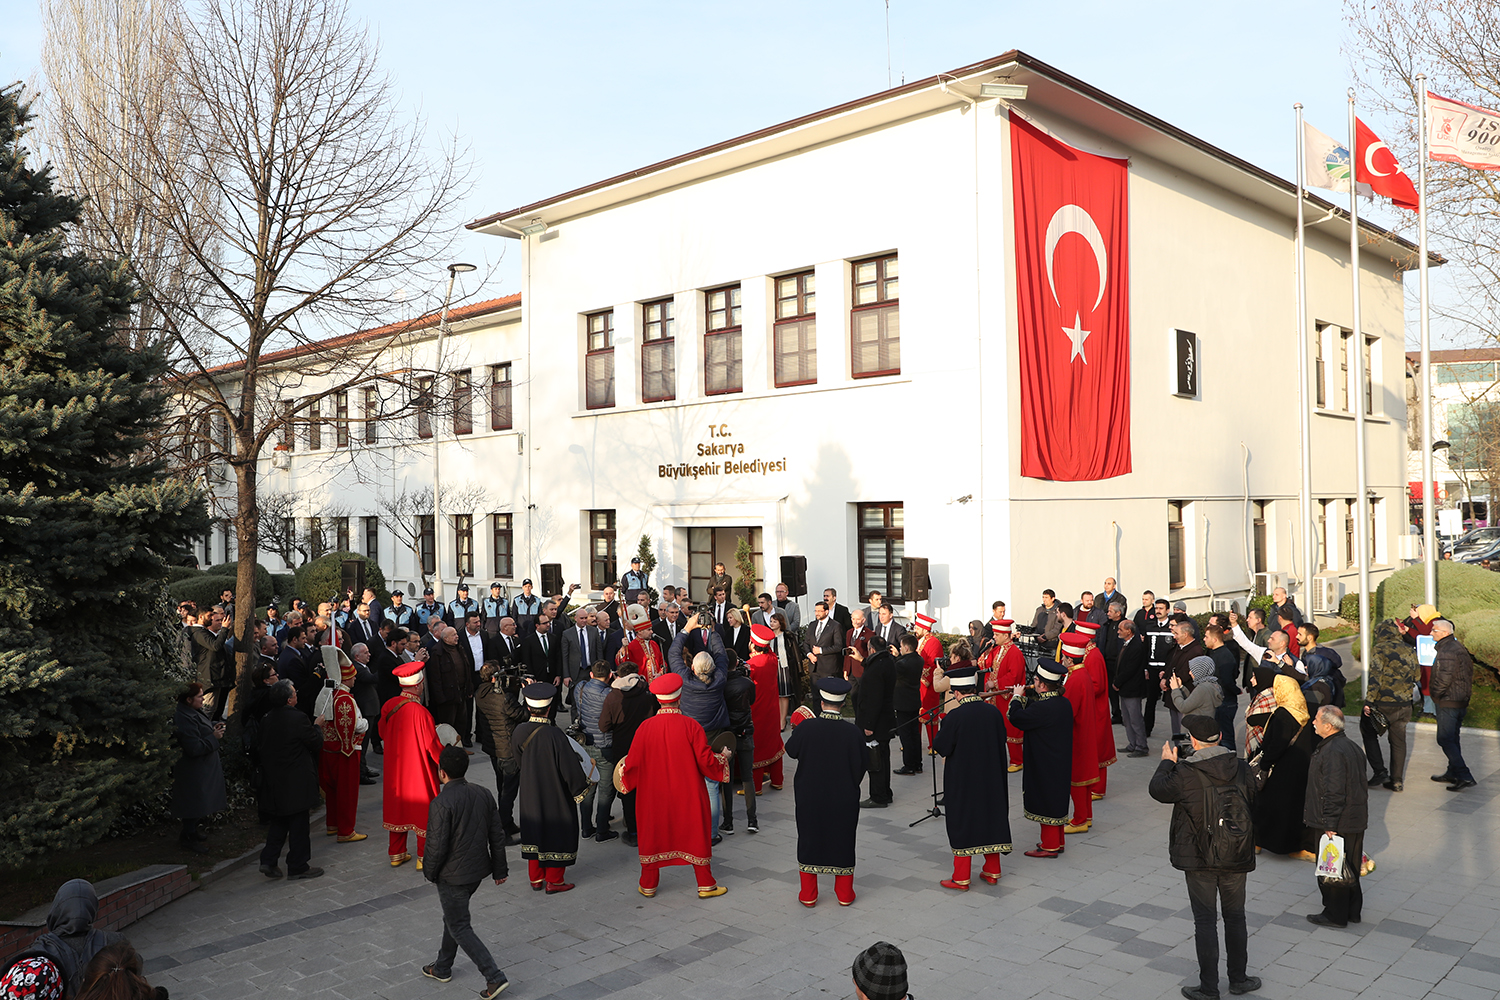 “2021 Türk Dünyası Kültür Başkentine en uygun aday Sakarya’dır”